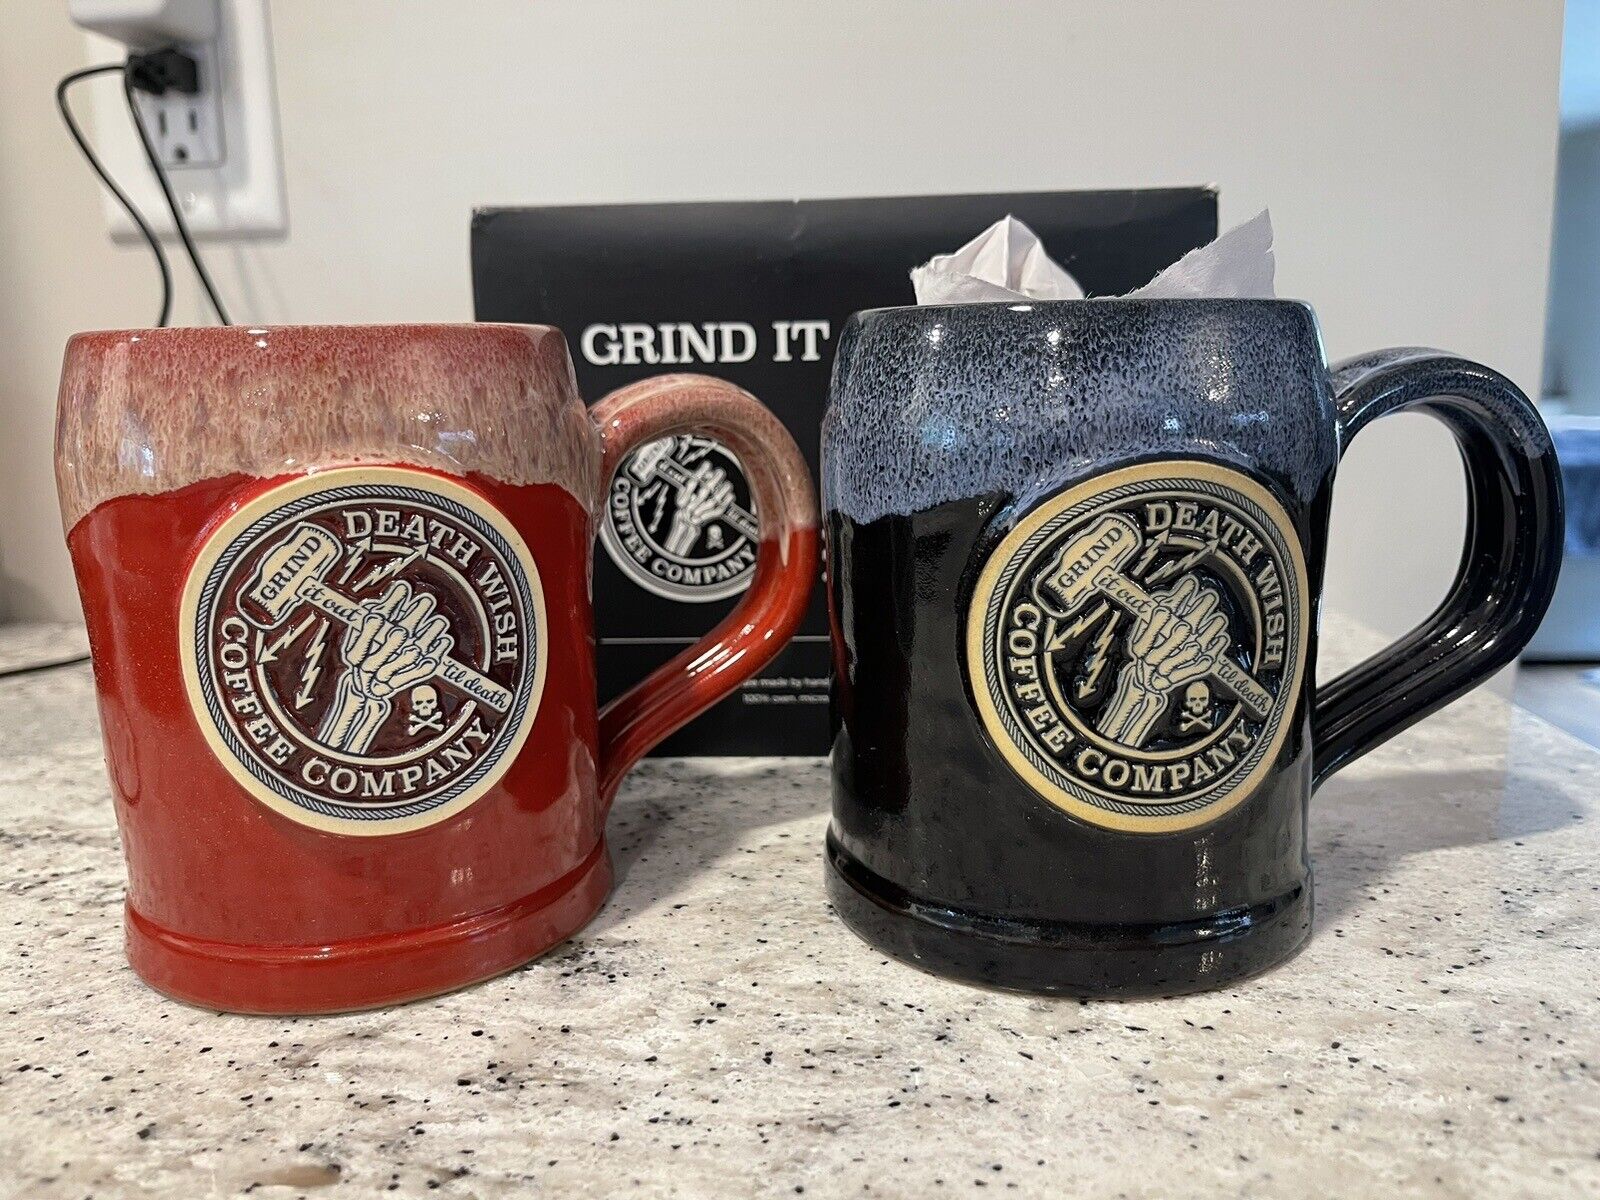 Death Wish Coffee Company 2018 Grind It Out Till Death Coffee Mug Set Deneen